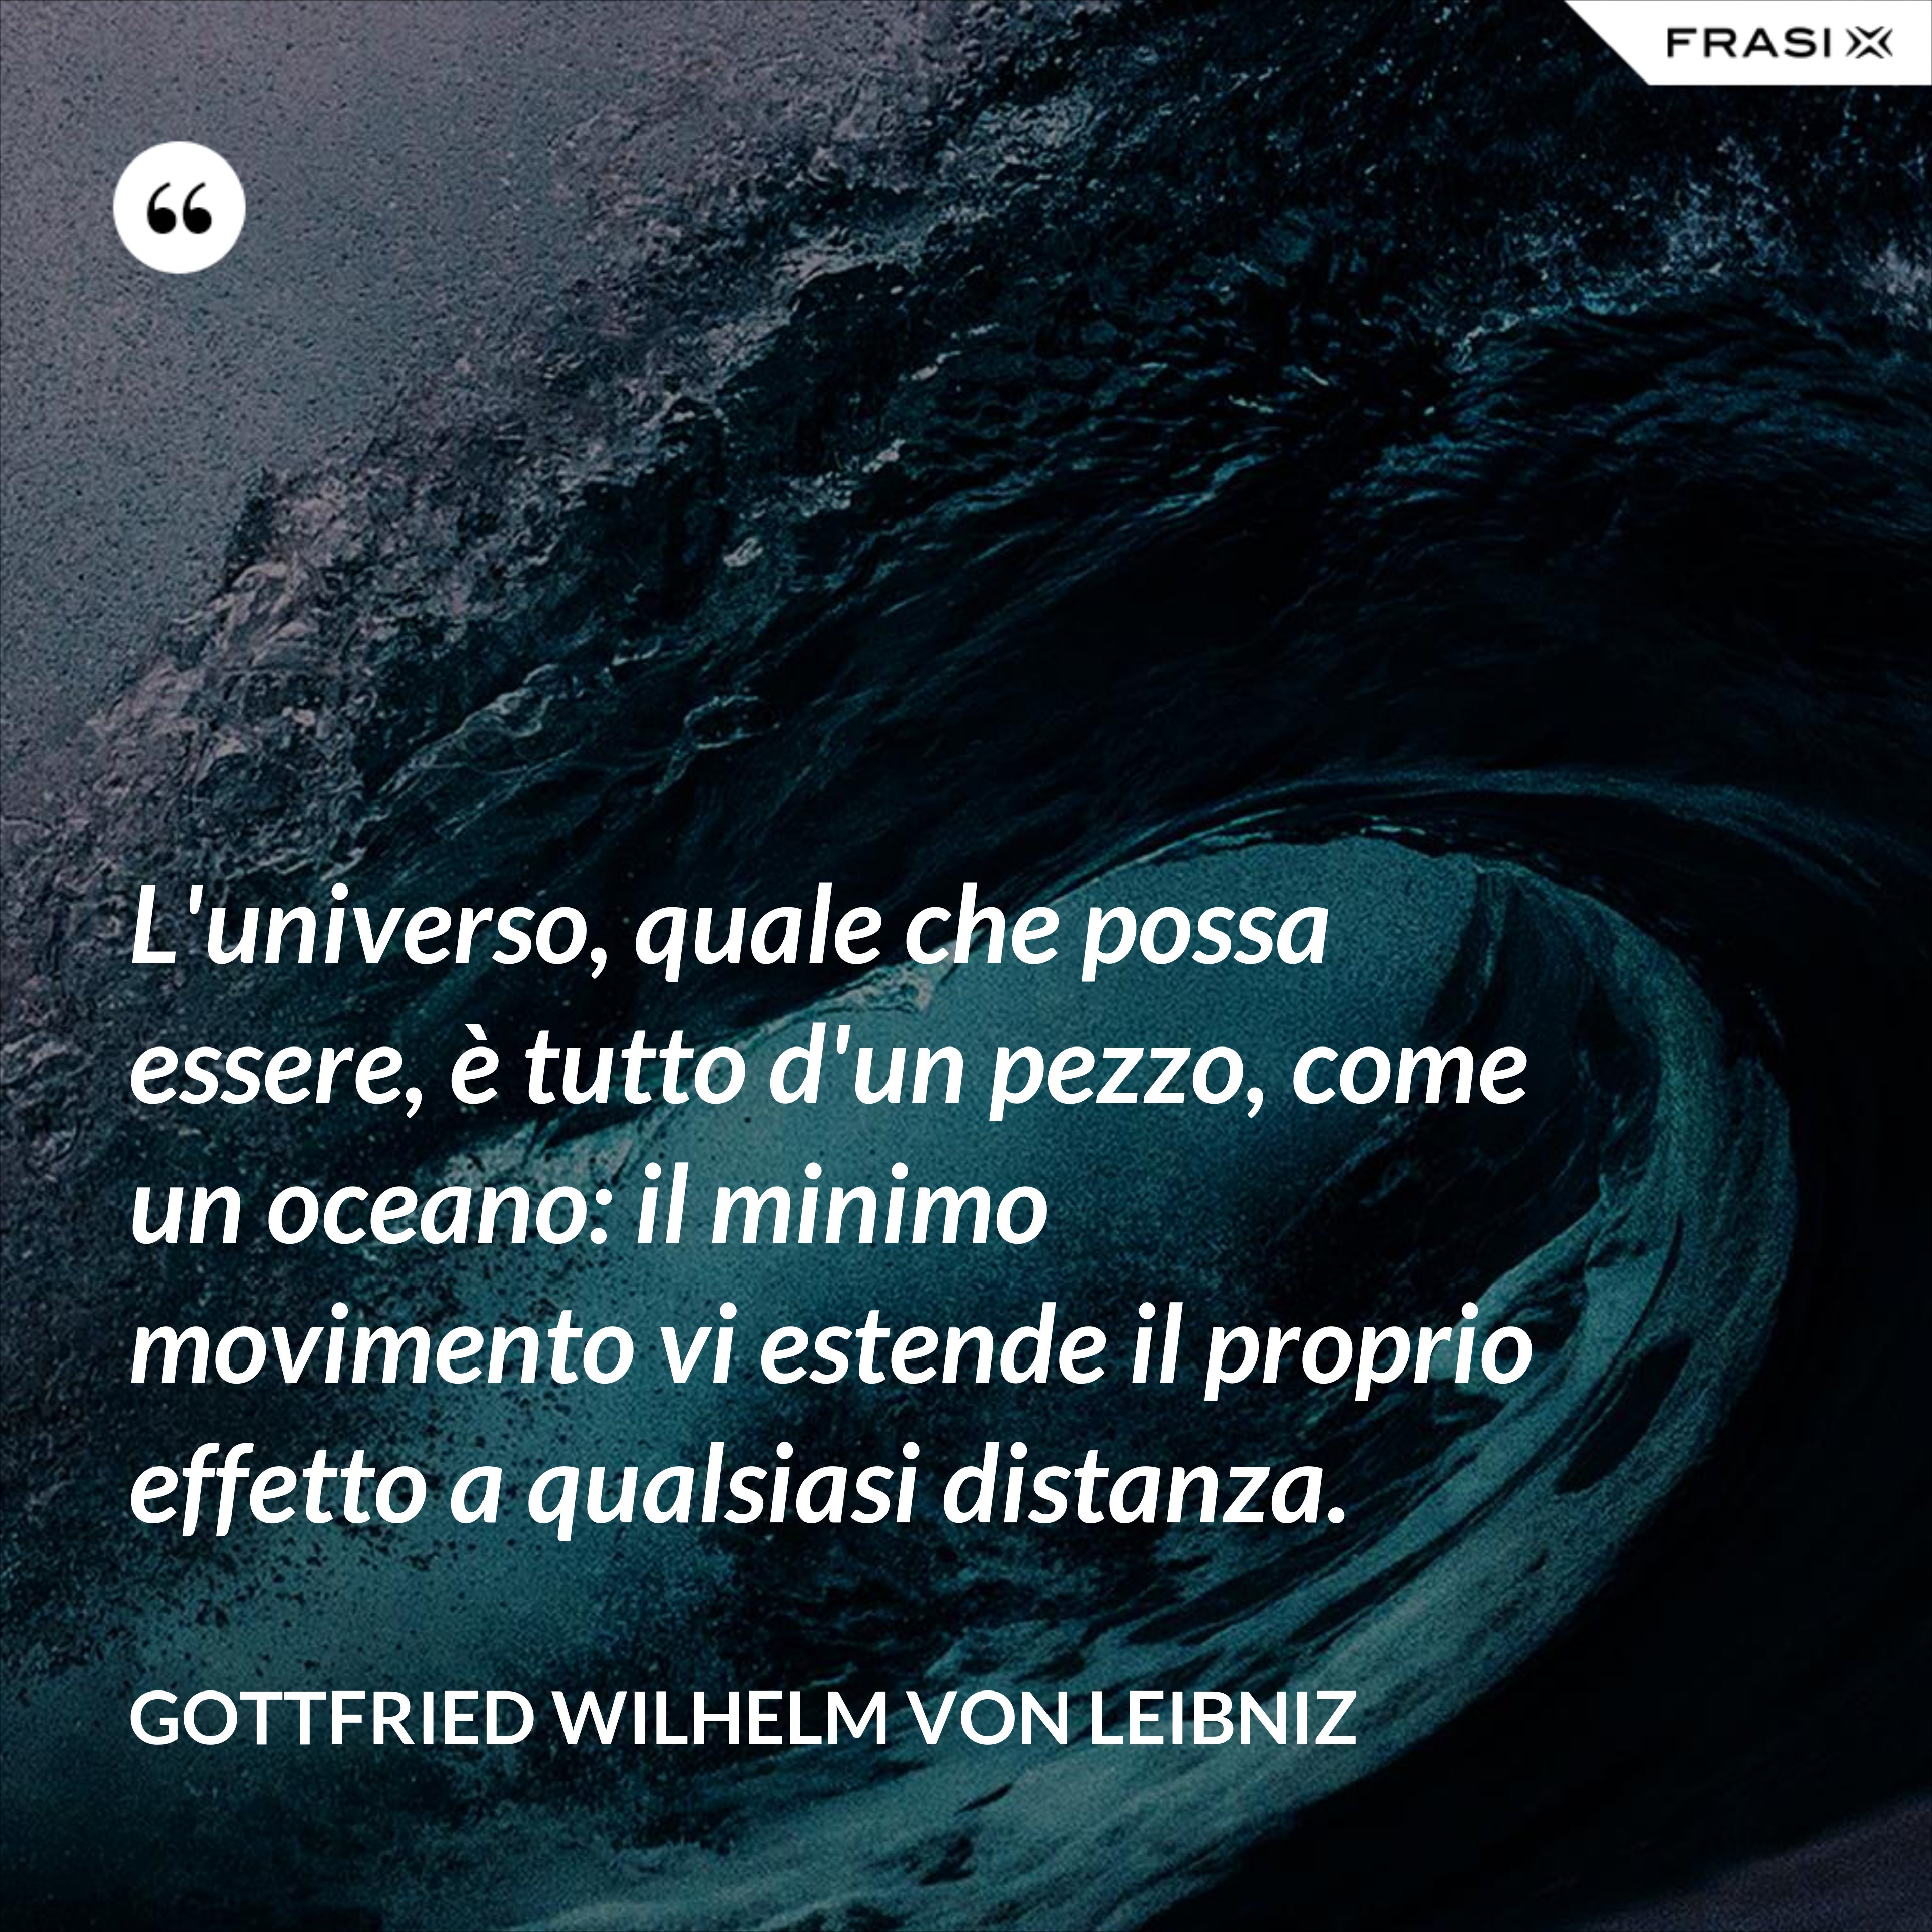 L'universo, quale che possa essere, è tutto d'un pezzo, come un oceano: il minimo movimento vi estende il proprio effetto a qualsiasi distanza. - Gottfried Wilhelm von Leibniz